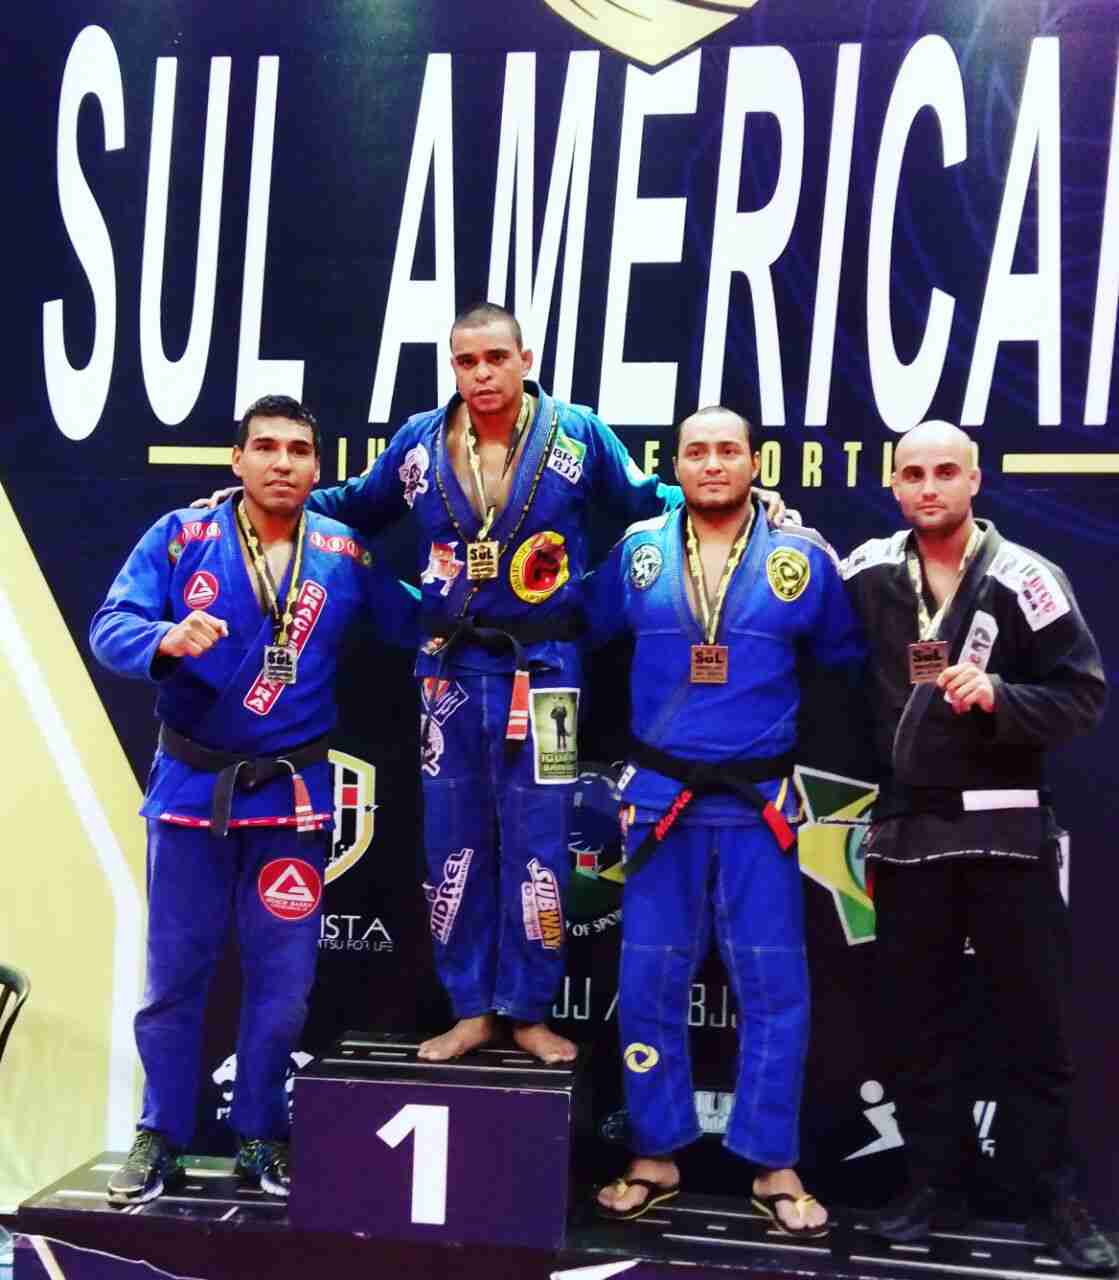 Jiu-Jítsu de Caraguatatuba se destaca no Campeonato Sul-Americano em São Paulo 